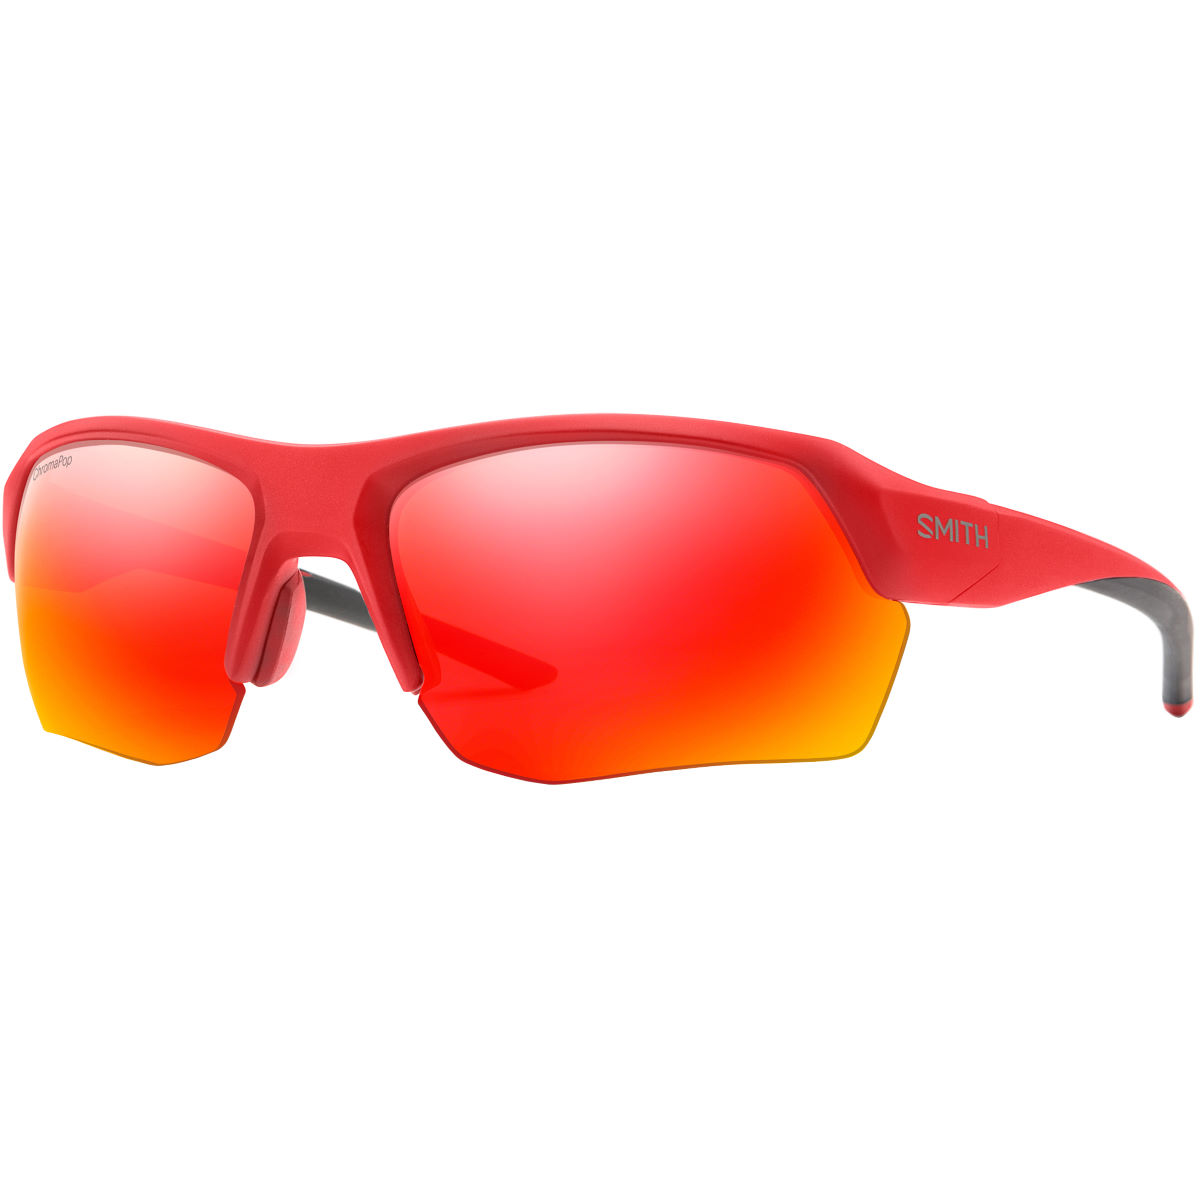 Smith Tempo Max Sunglasses - Gafas de sol